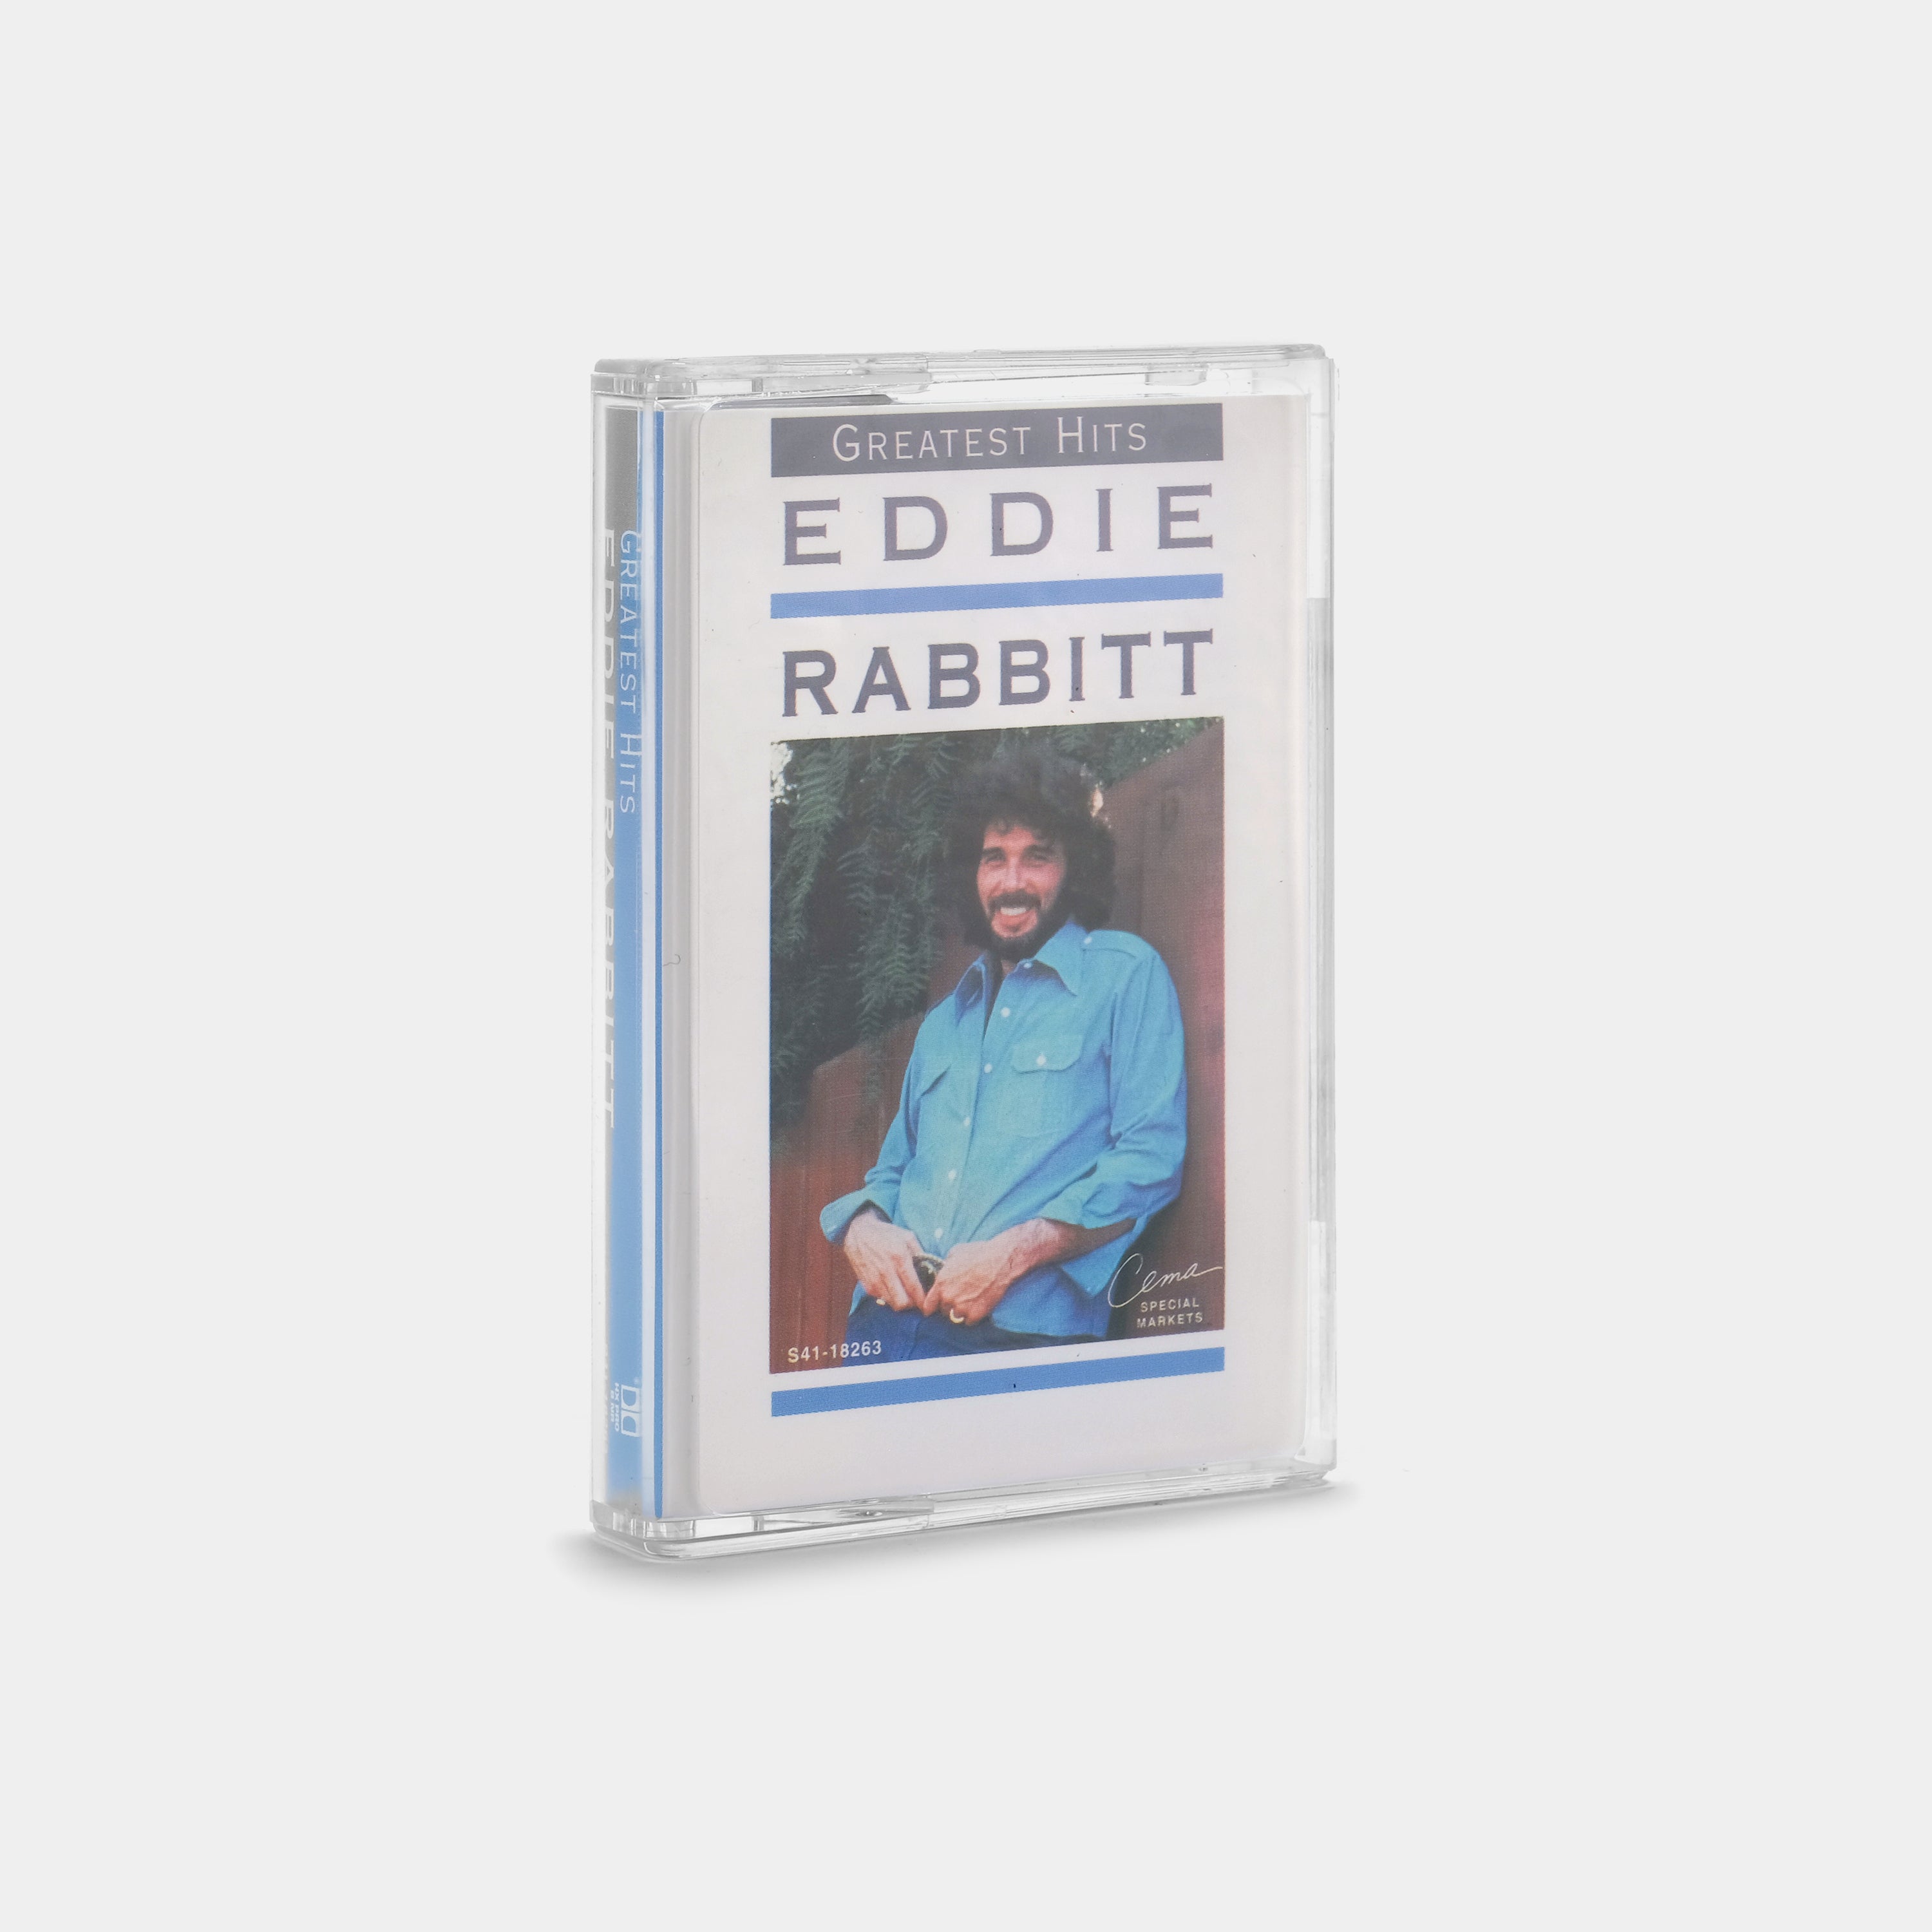 Eddie Rabbitt - All Time Greatest Hits Cassette Tape